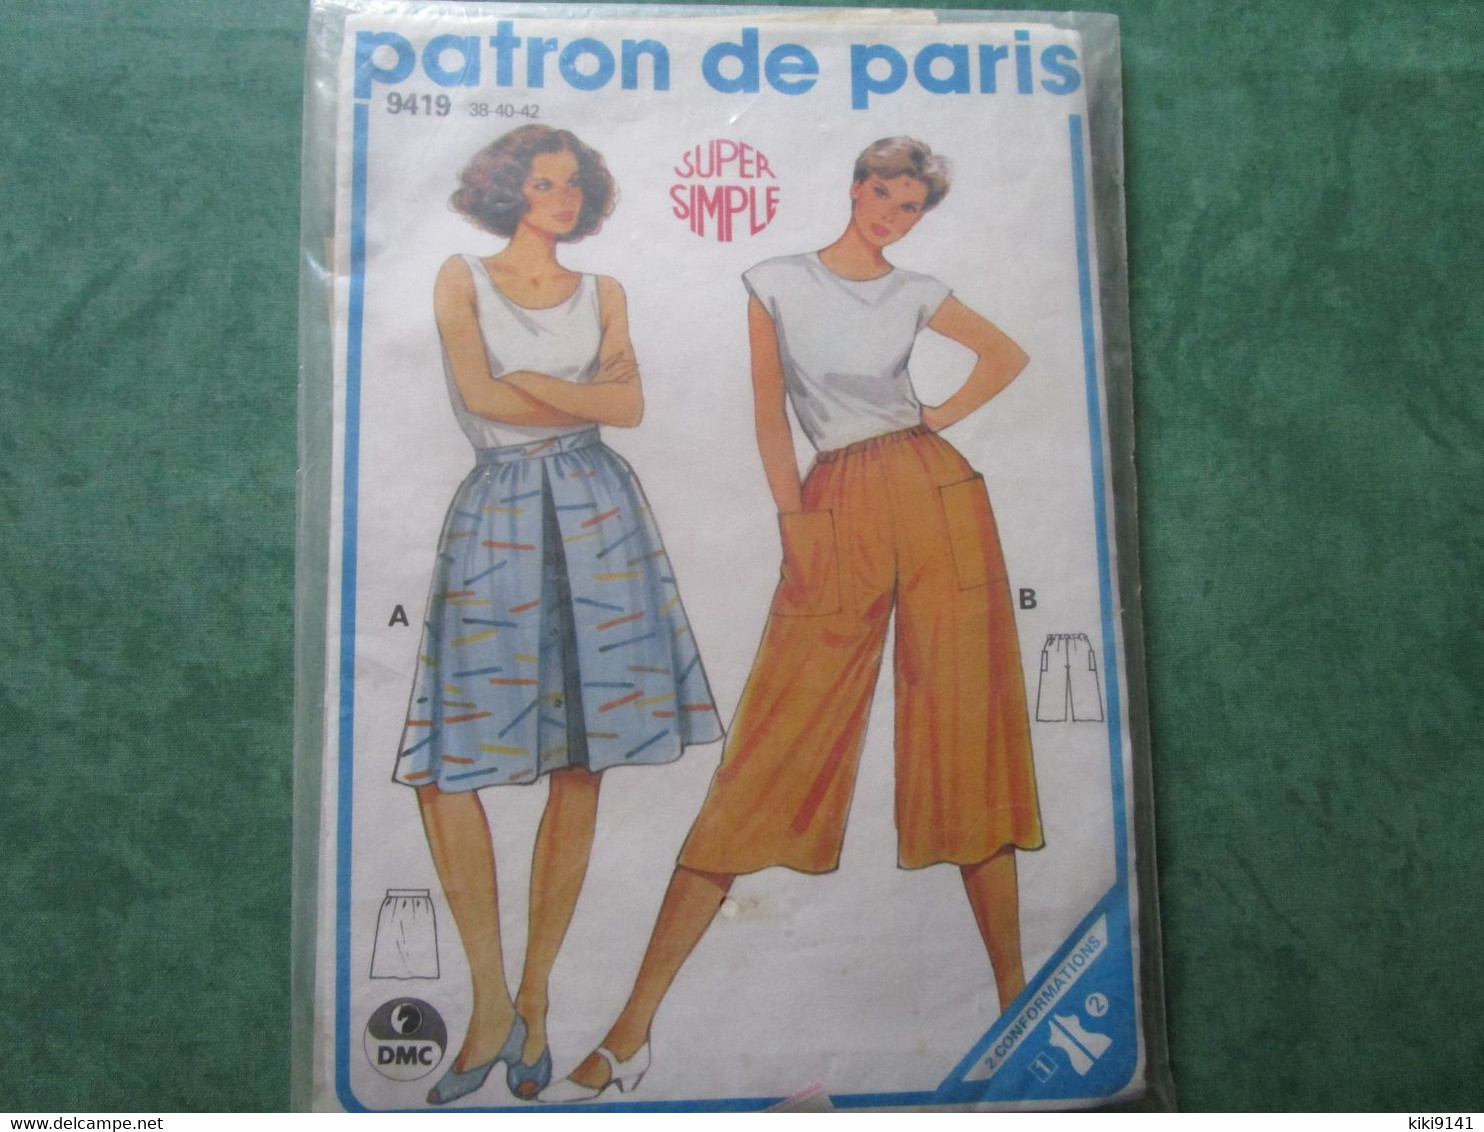 PATRON DE PARIS 9419 - 38-40-42 - Super Simple - Patrons